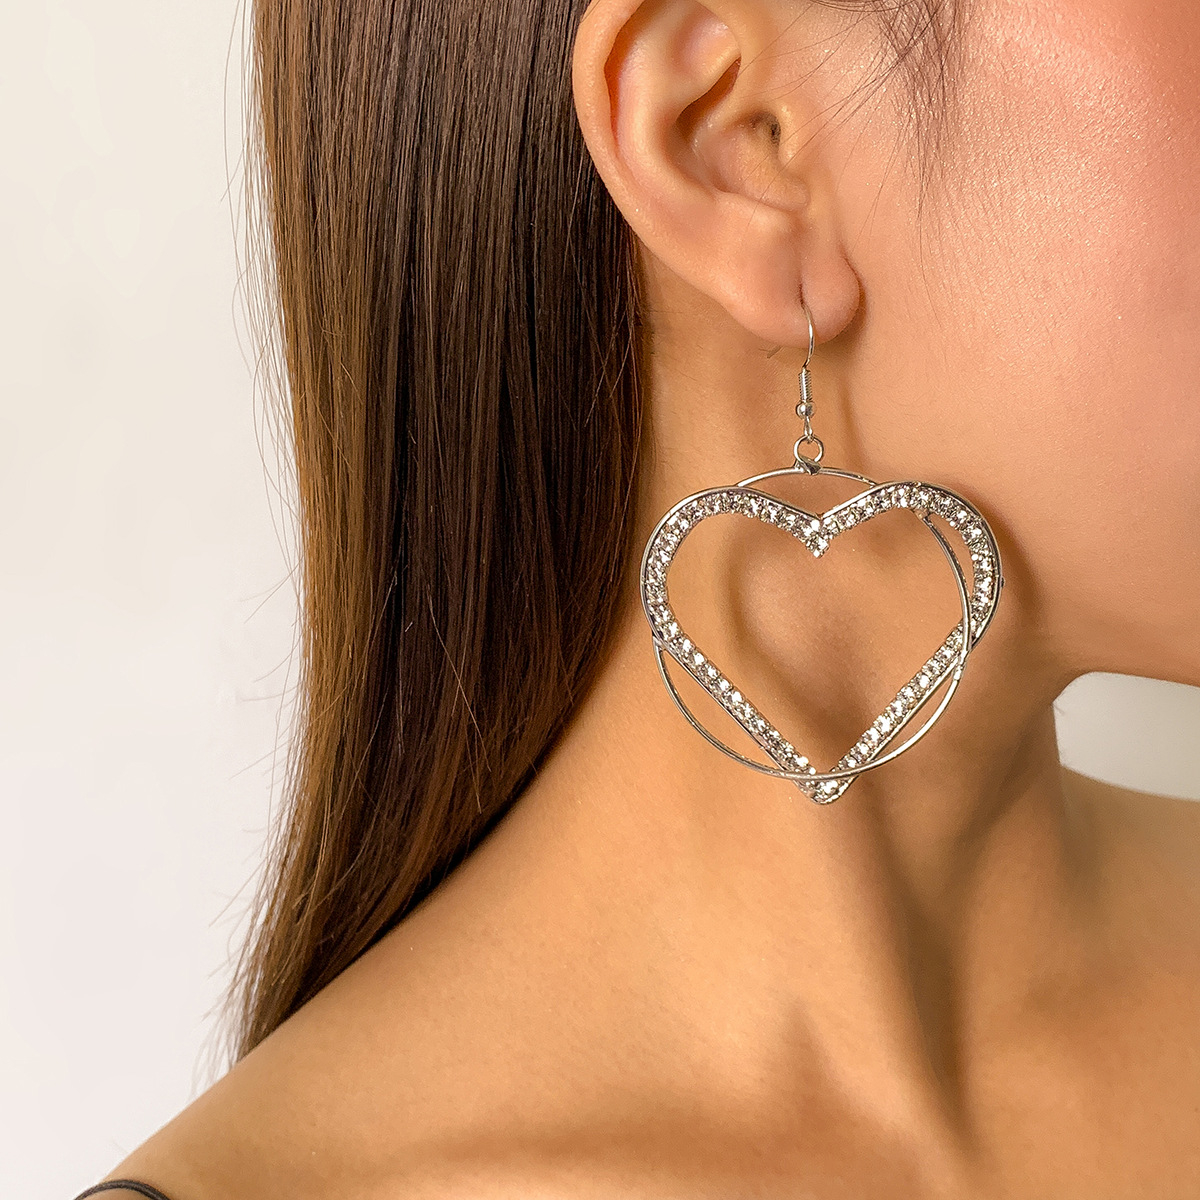 2313 Fashion Jewelry Statement Large Heart Hoop Drop Earrings Rhinestones Decor for Women Girls Gift